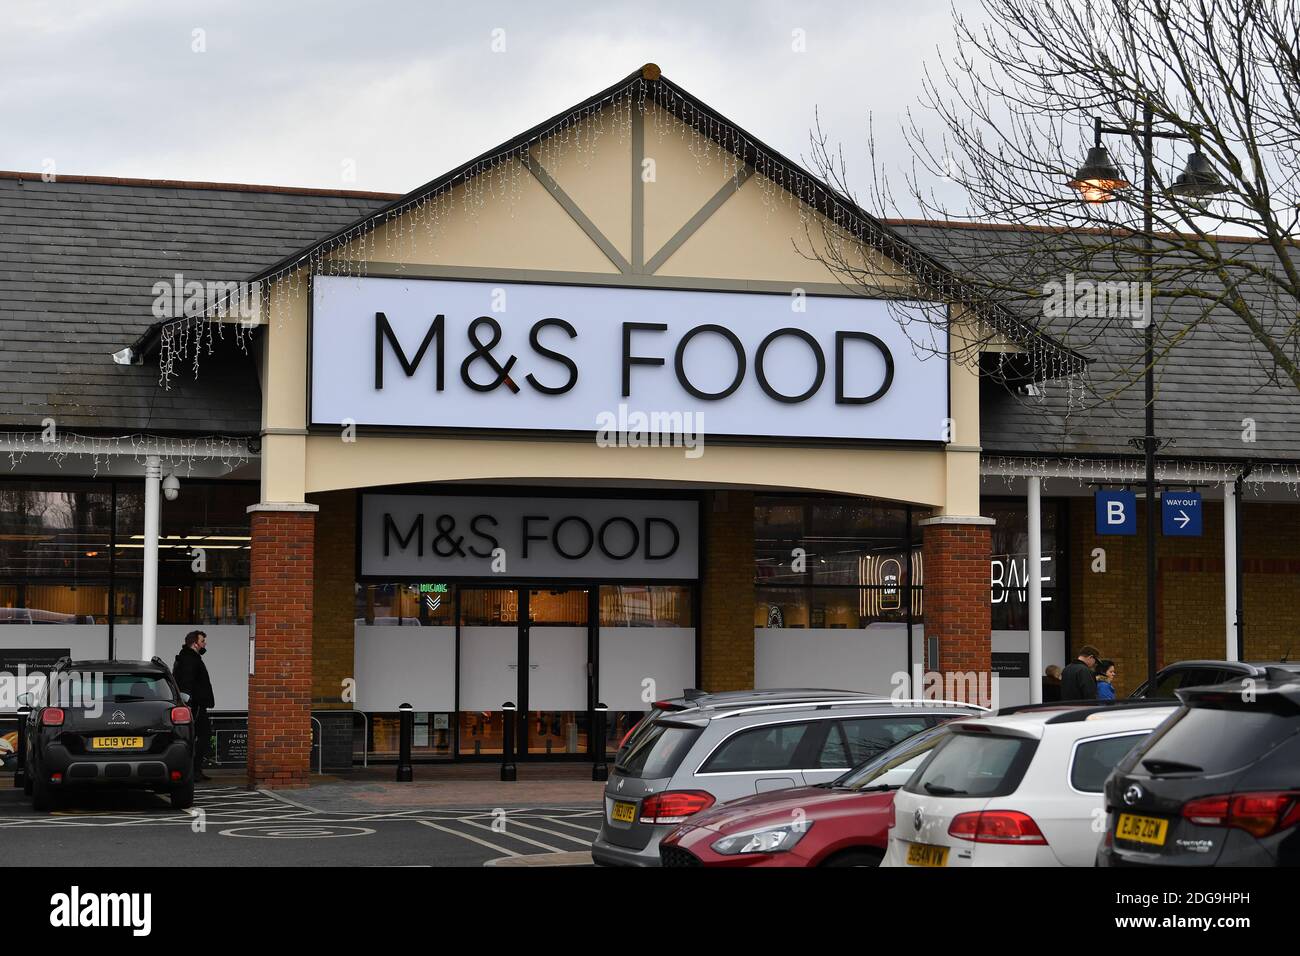 Marks & Spencer M&S Food Shop à Two Rivers, Staines, Surrey, jeudi 2 décembre 2020. Banque D'Images